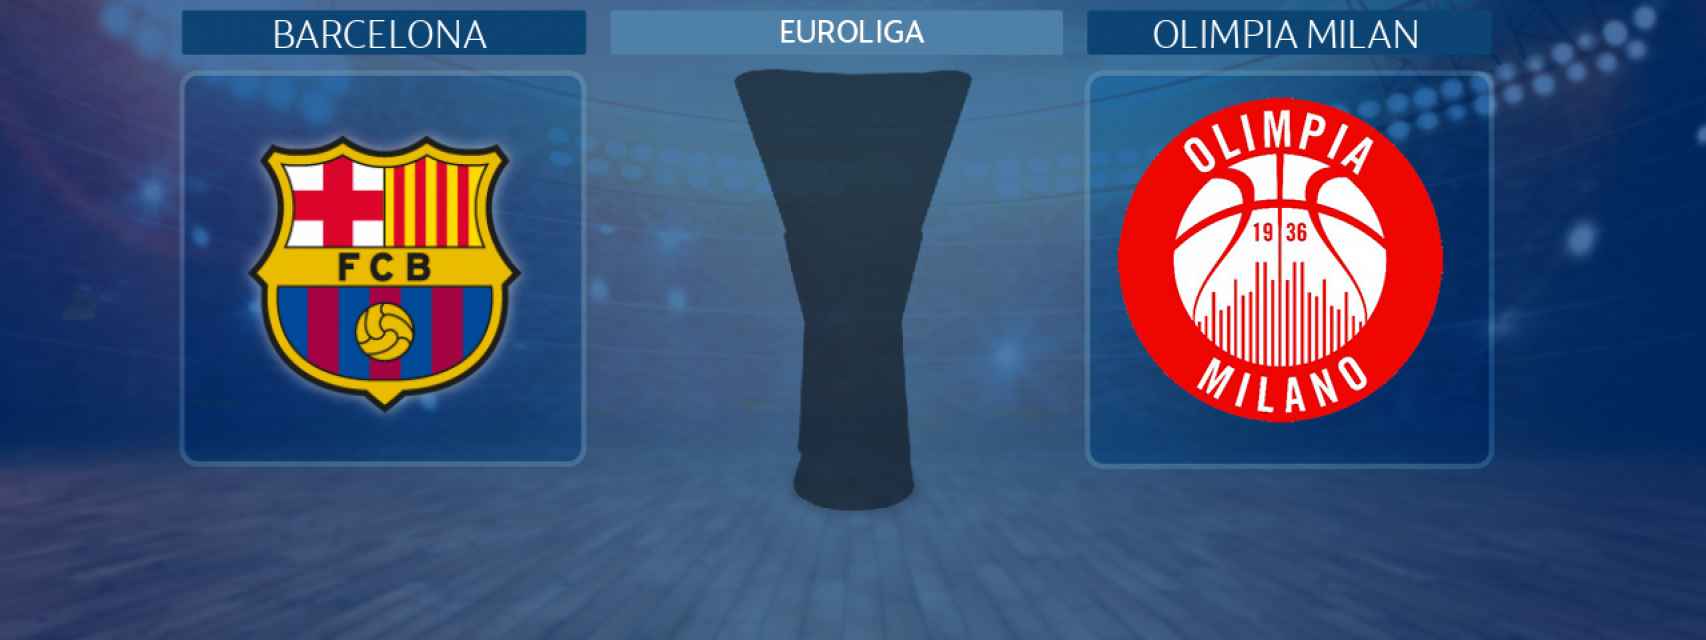 Barcelona - Olimpia Milan, semifinal de la Euroliga